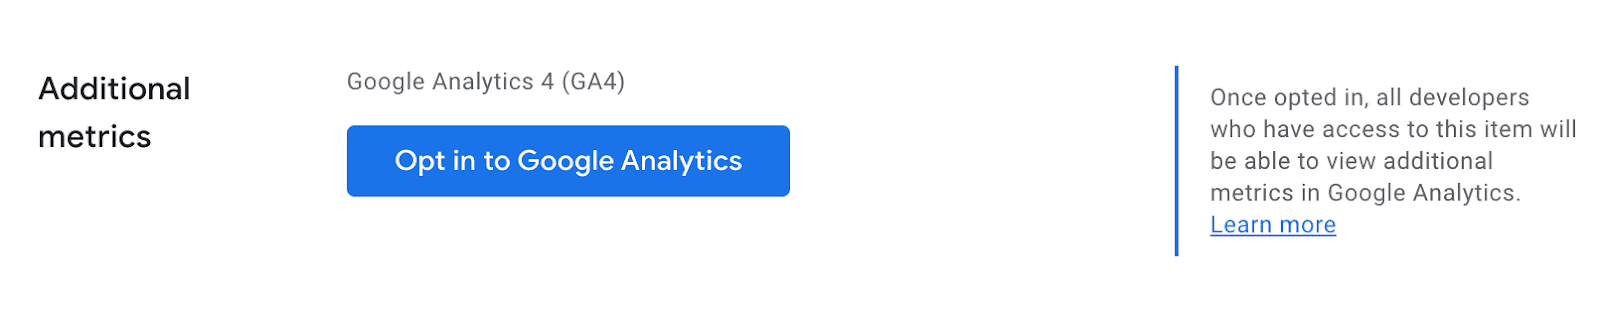 تفعيل واجهة مستخدم لخدمة &quot;إحصاءات Google&quot; في لوحة بيانات المطوّر